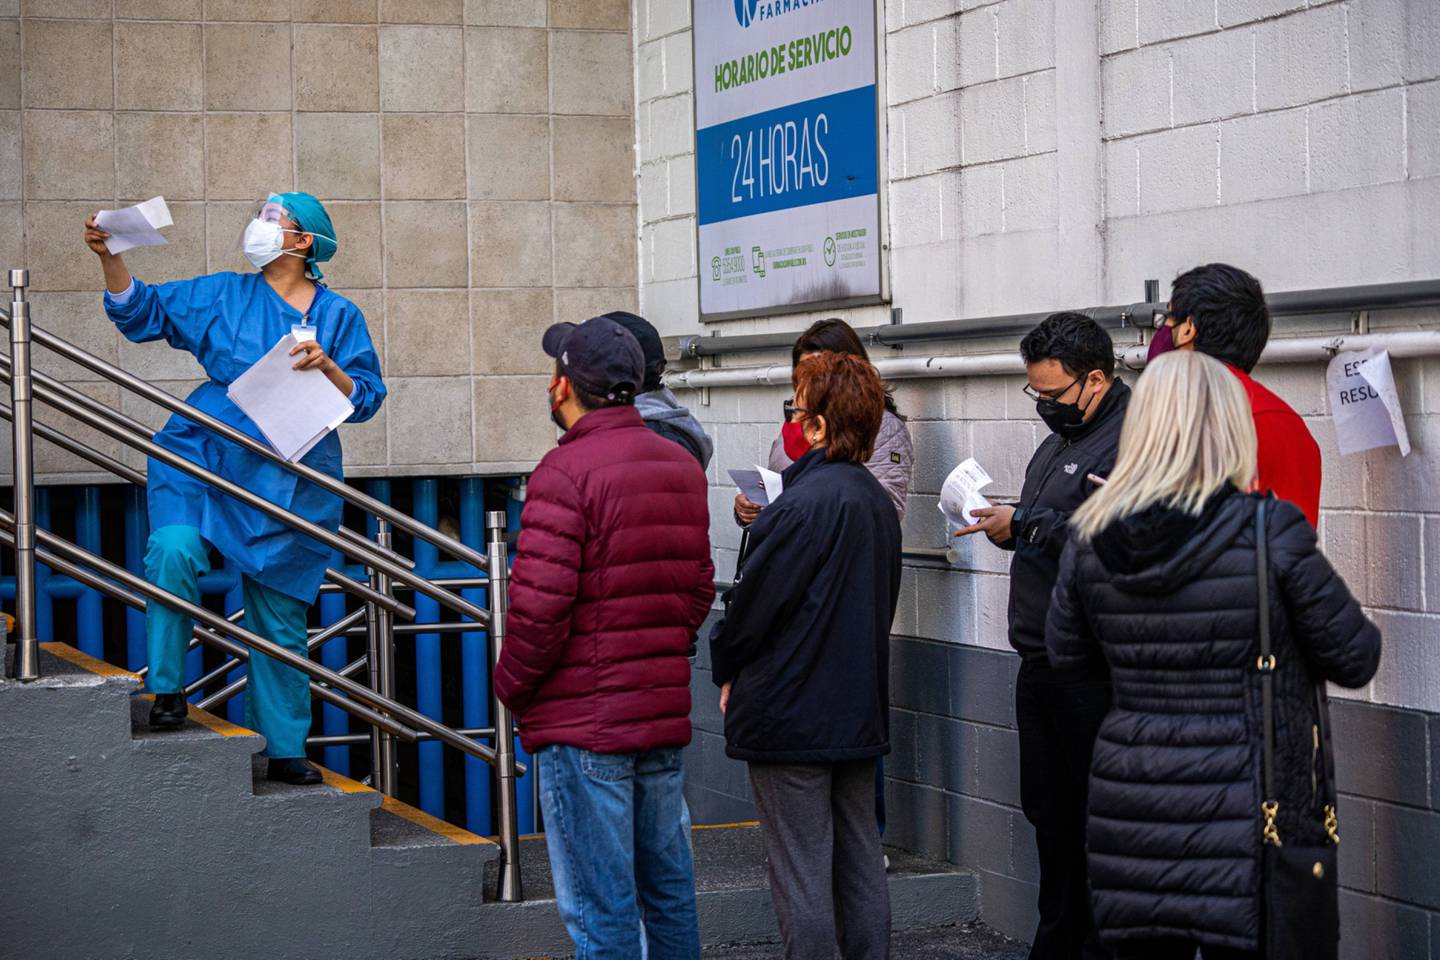 Trabajadores sanitarios entregan los resultados de pruebas Covid-19 afuera de una farmacia en Ciudad de México.dfd